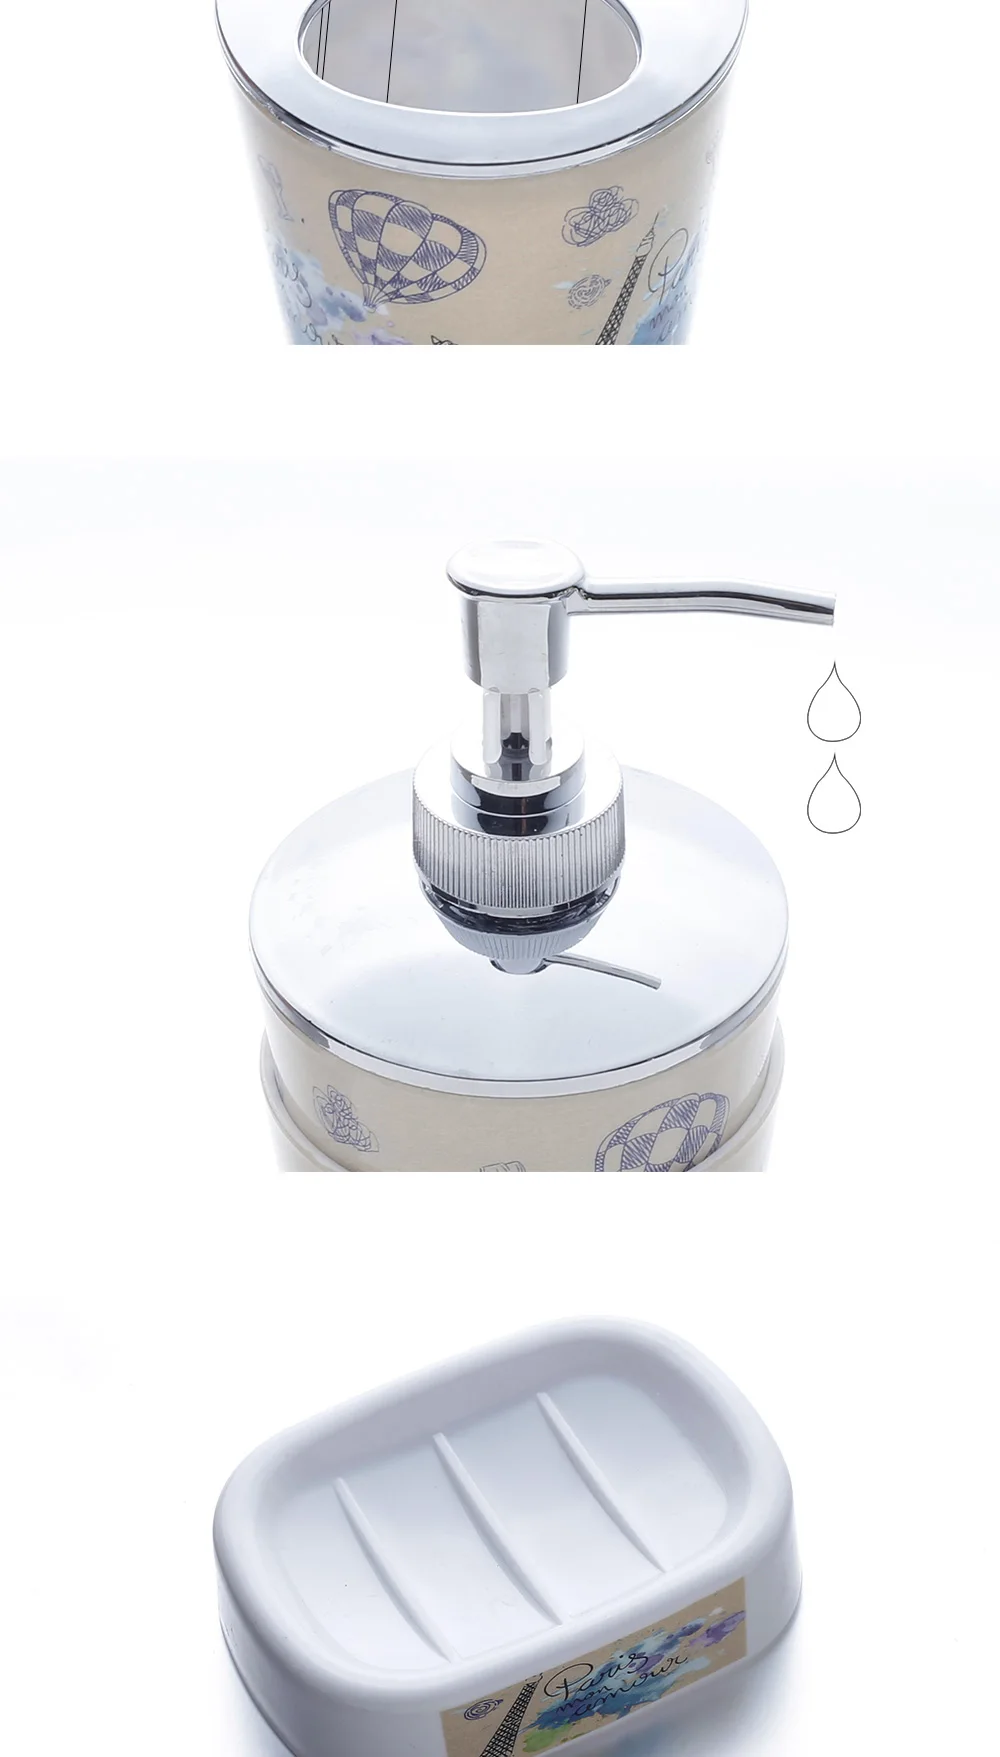 SDARISB пластиковые аксессуары для ванной комнаты Набор 4 шт Подарочный банный набор Inlcude держатель для зубной щетки набор стакан мыло мыльный диспенсер для посуды